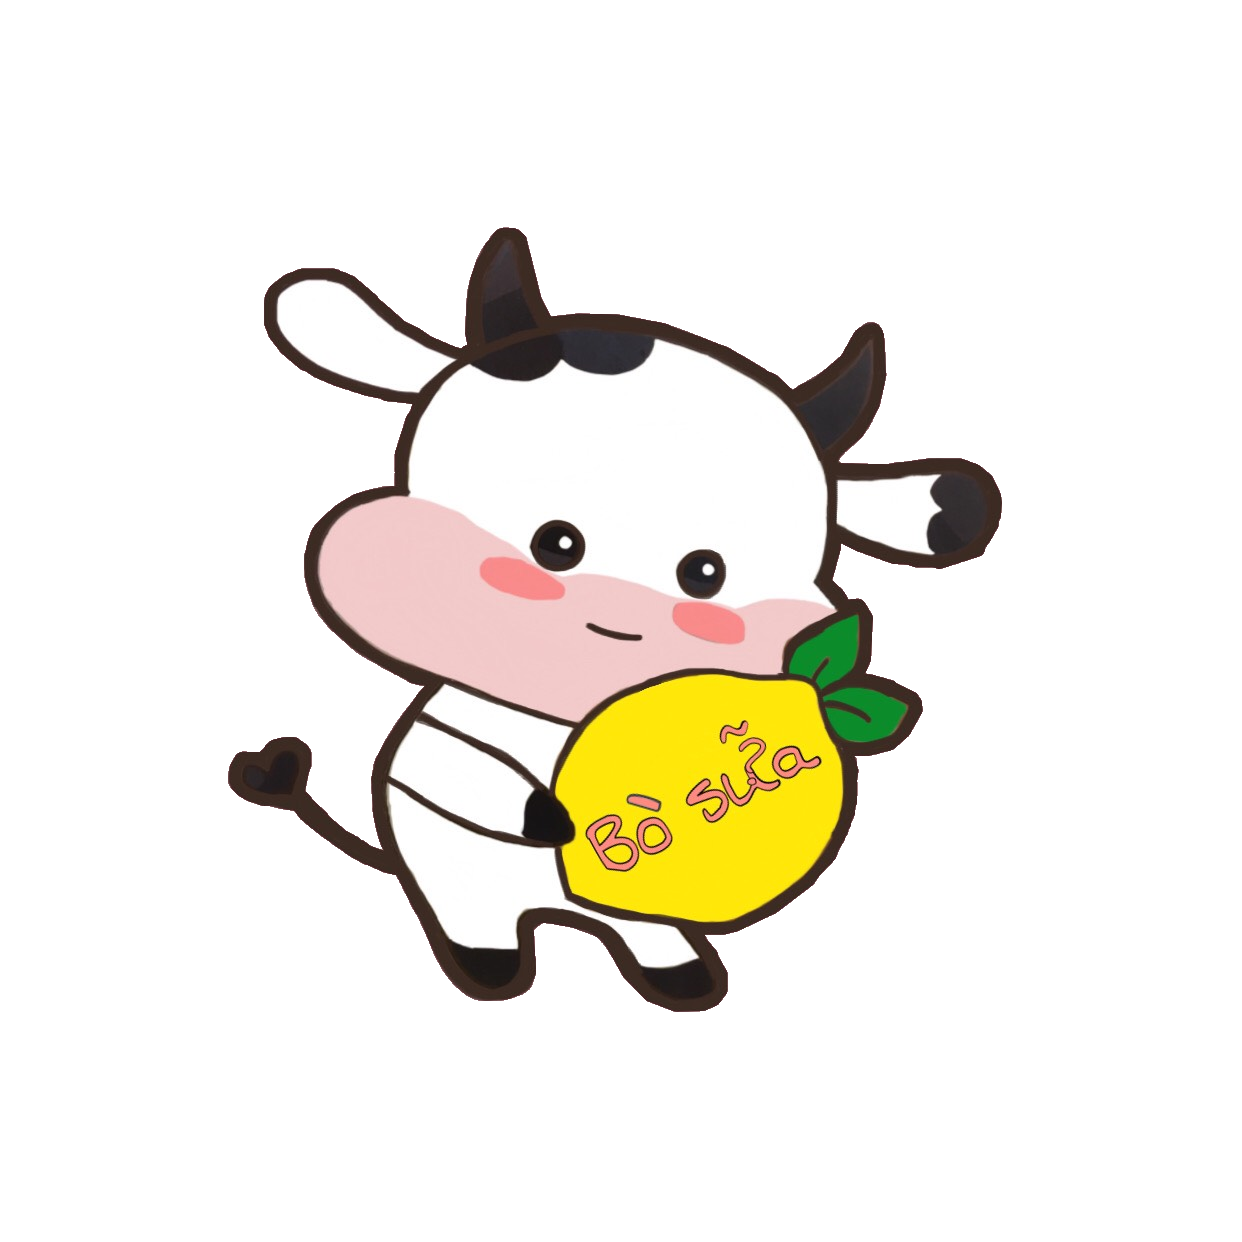 Là một fan hâm mộ của bò sữa, bạn không thể bỏ qua Sticker Washi Bò Sữa đấy! Với sự kết hợp giữa các hình ảnh bò sữa đáng yêu và loại washi tape độc đáo, bạn sẽ có những dòng bức thư, sổ ghi chú và quà tặng không thể tuyệt vời hơn. Hãy khám phá thế giới bò sữa của chúng tôi và tìm kiếm Sticker Washi Bò Sữa cho bản thân bạn hoặc những người thân yêu của bạn!